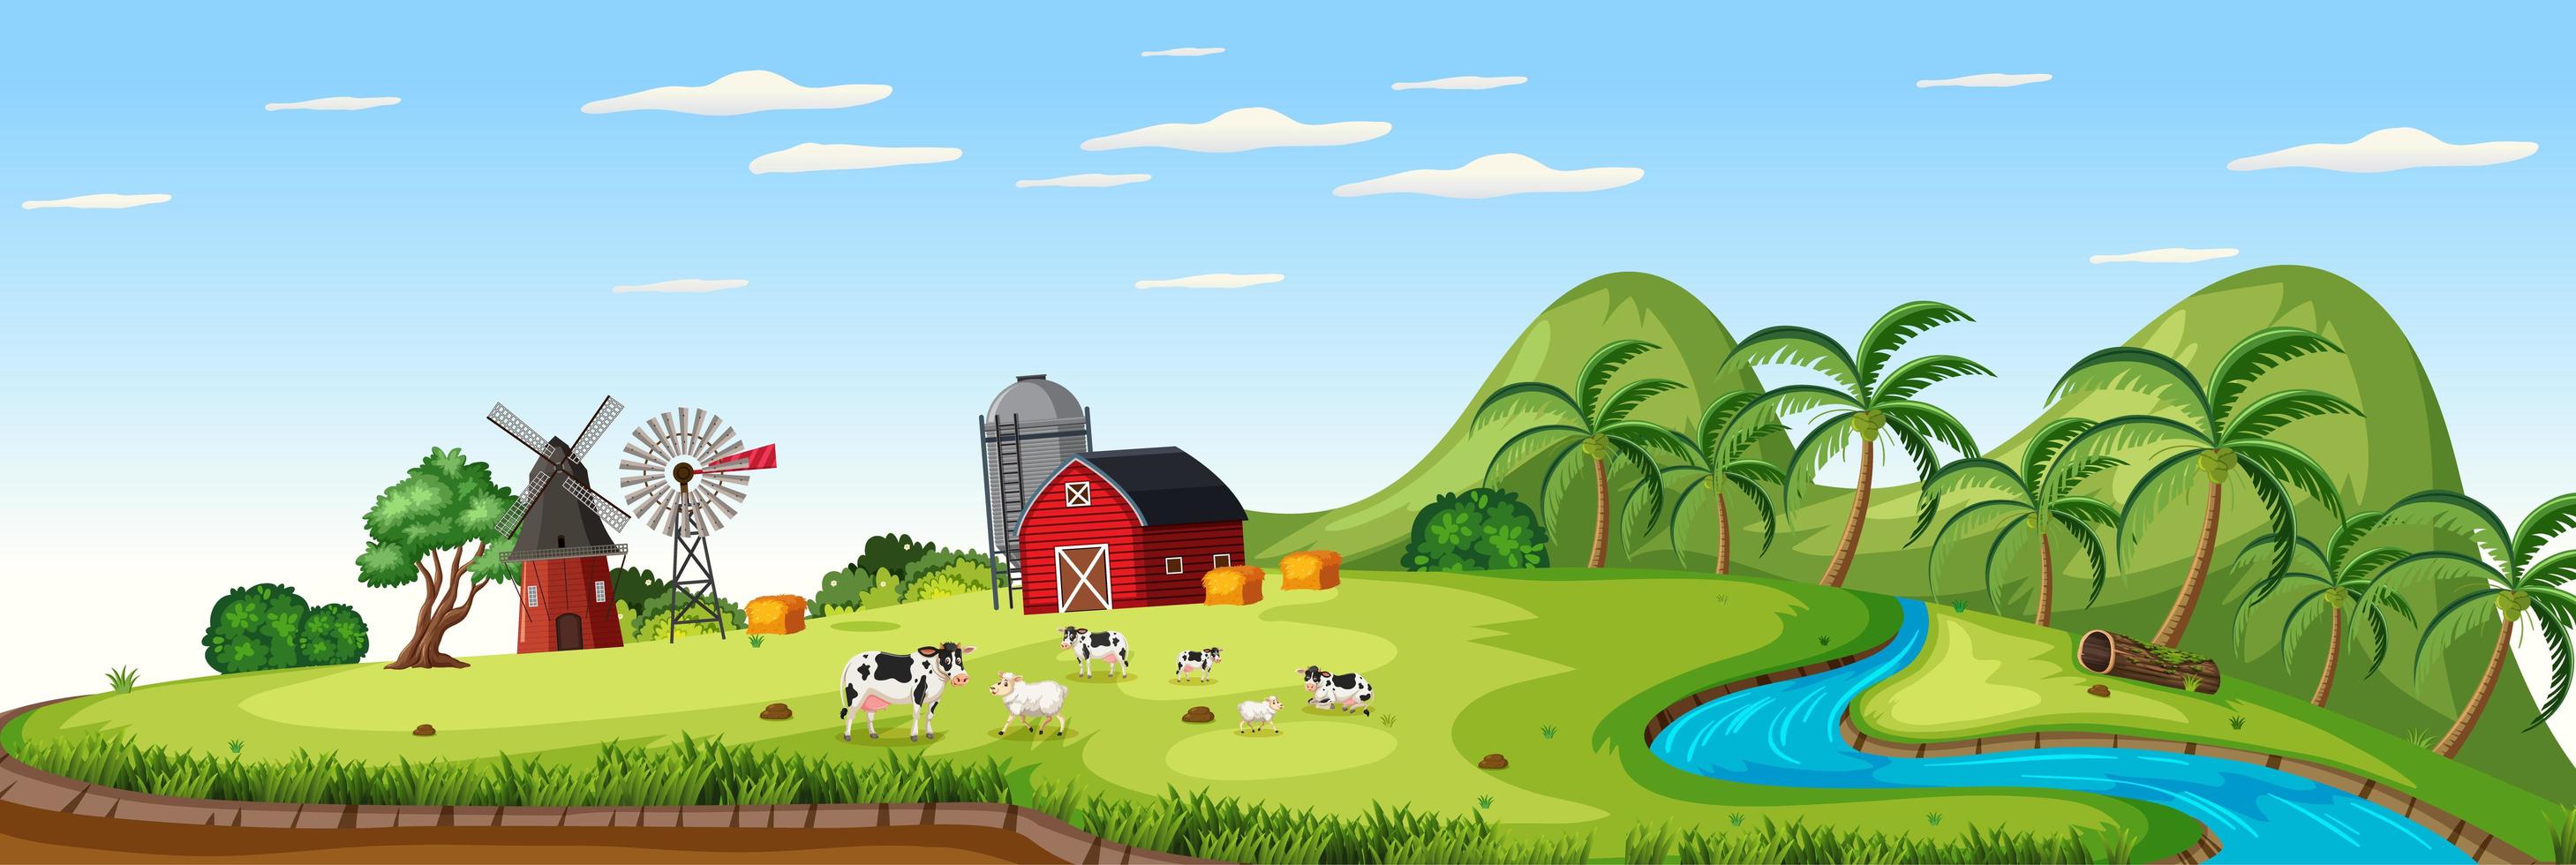 paesaggio agricolo con fattoria degli animali e fienile rosso nella stagione estiva vettore